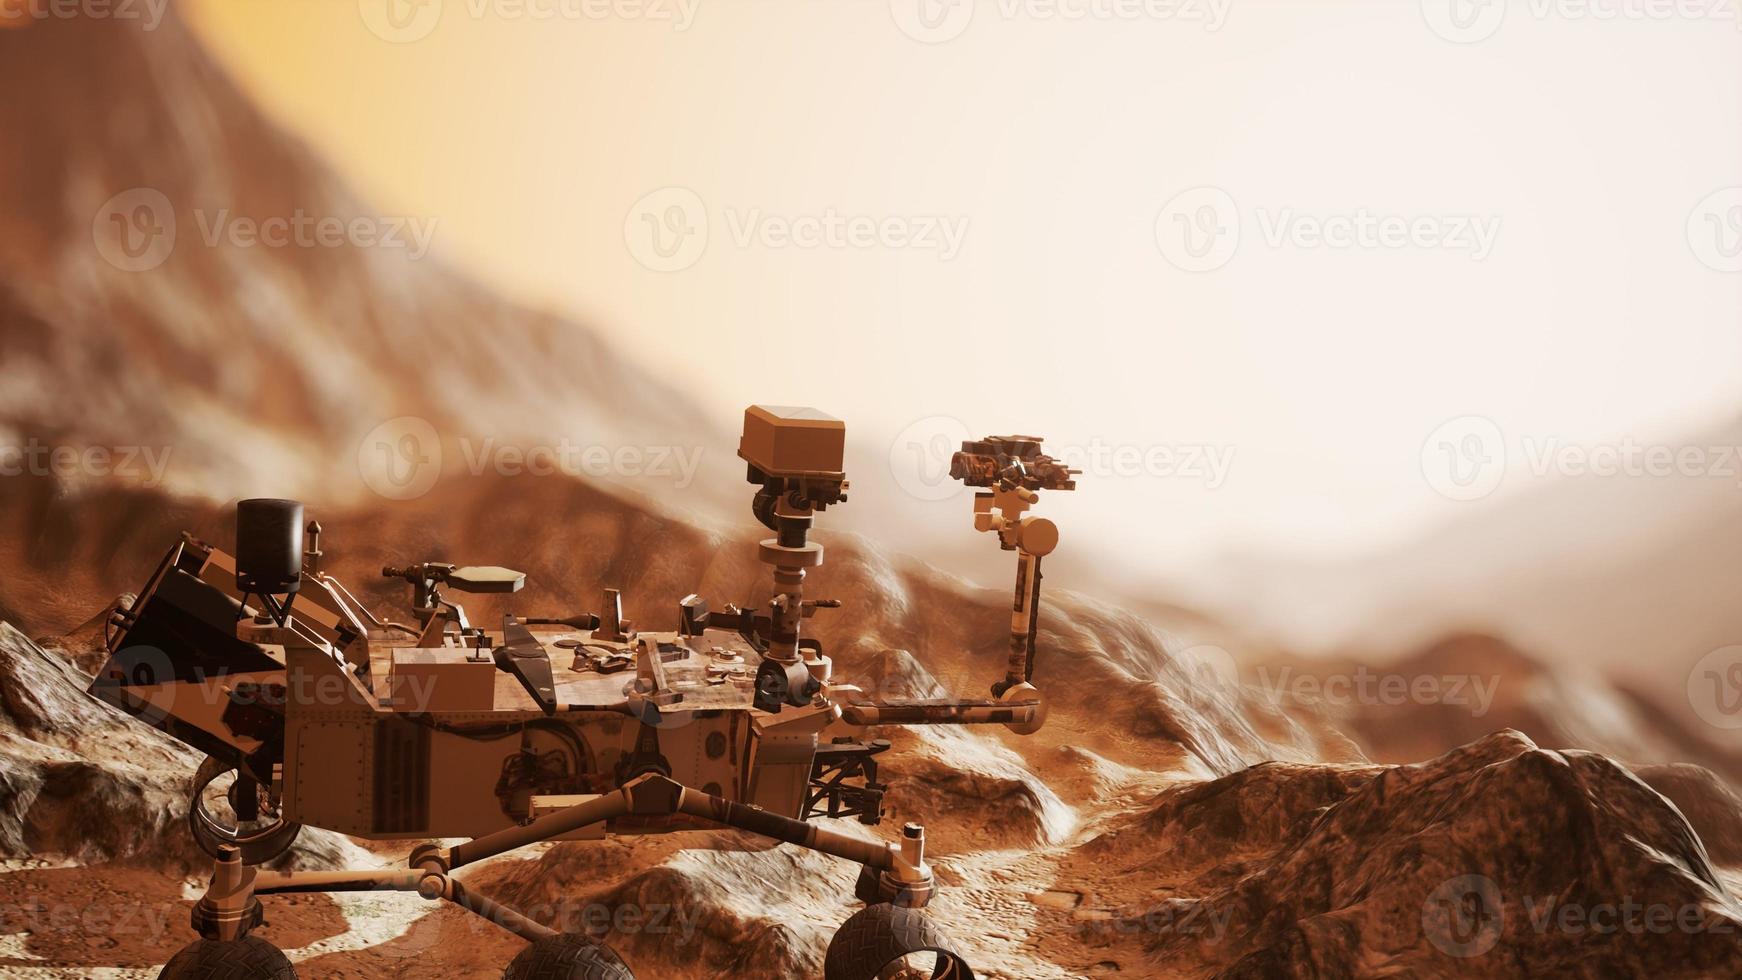 curiosità rover marte che esplora la superficie del pianeta rosso foto